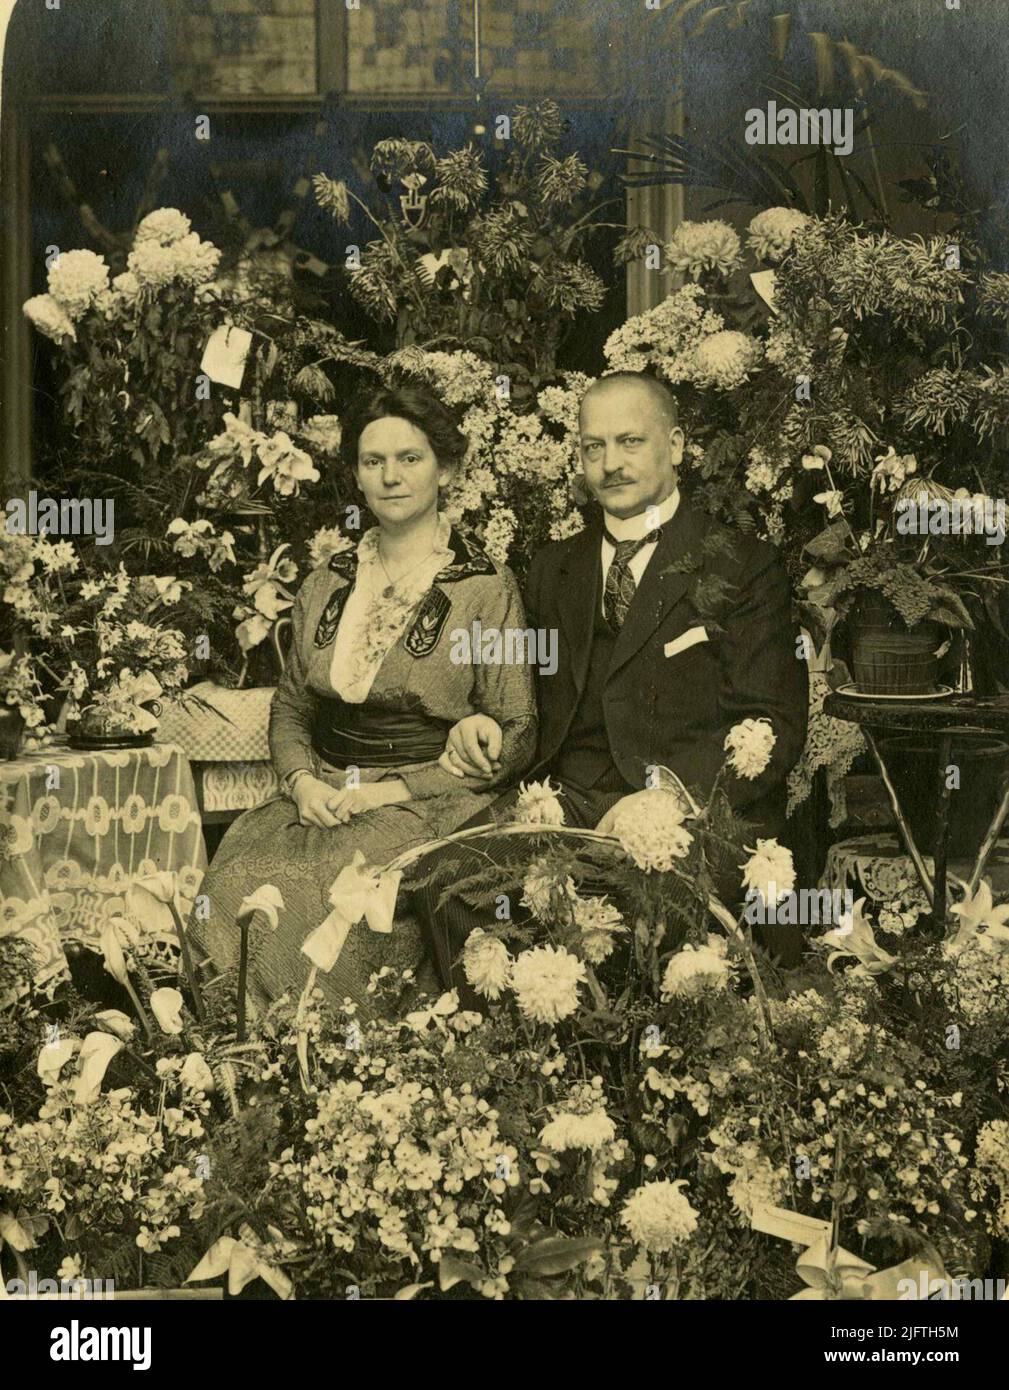 Ritratto di Jan Hamerslag (20/02/1879 - 00/0000) e della moglie Emma Helene (Emmy) Dickmann (12/09/1874 - 00/1953) in occasione della celebrazione della festa di nozze 12½ anno. Jan è figlio di Hermanus Johannes Hamerslag (18/06/1853 - 24/03/1924), commerciante di carbone e partner di Joachimus (Chiem) van Houwinge (24/03/1859 - 22/02/1936), e della moglie Geertruida Magdalena van Dorland (26/11/1847 - 26/01/1922). Emma Helene è figlia del produttore di ombrelli Friedrich Wilhelm Dickmann (00/1843 - 06/05/1907) e della moglie Alette Schnitzler (00/1845 - 24/04/1916) Foto Stock